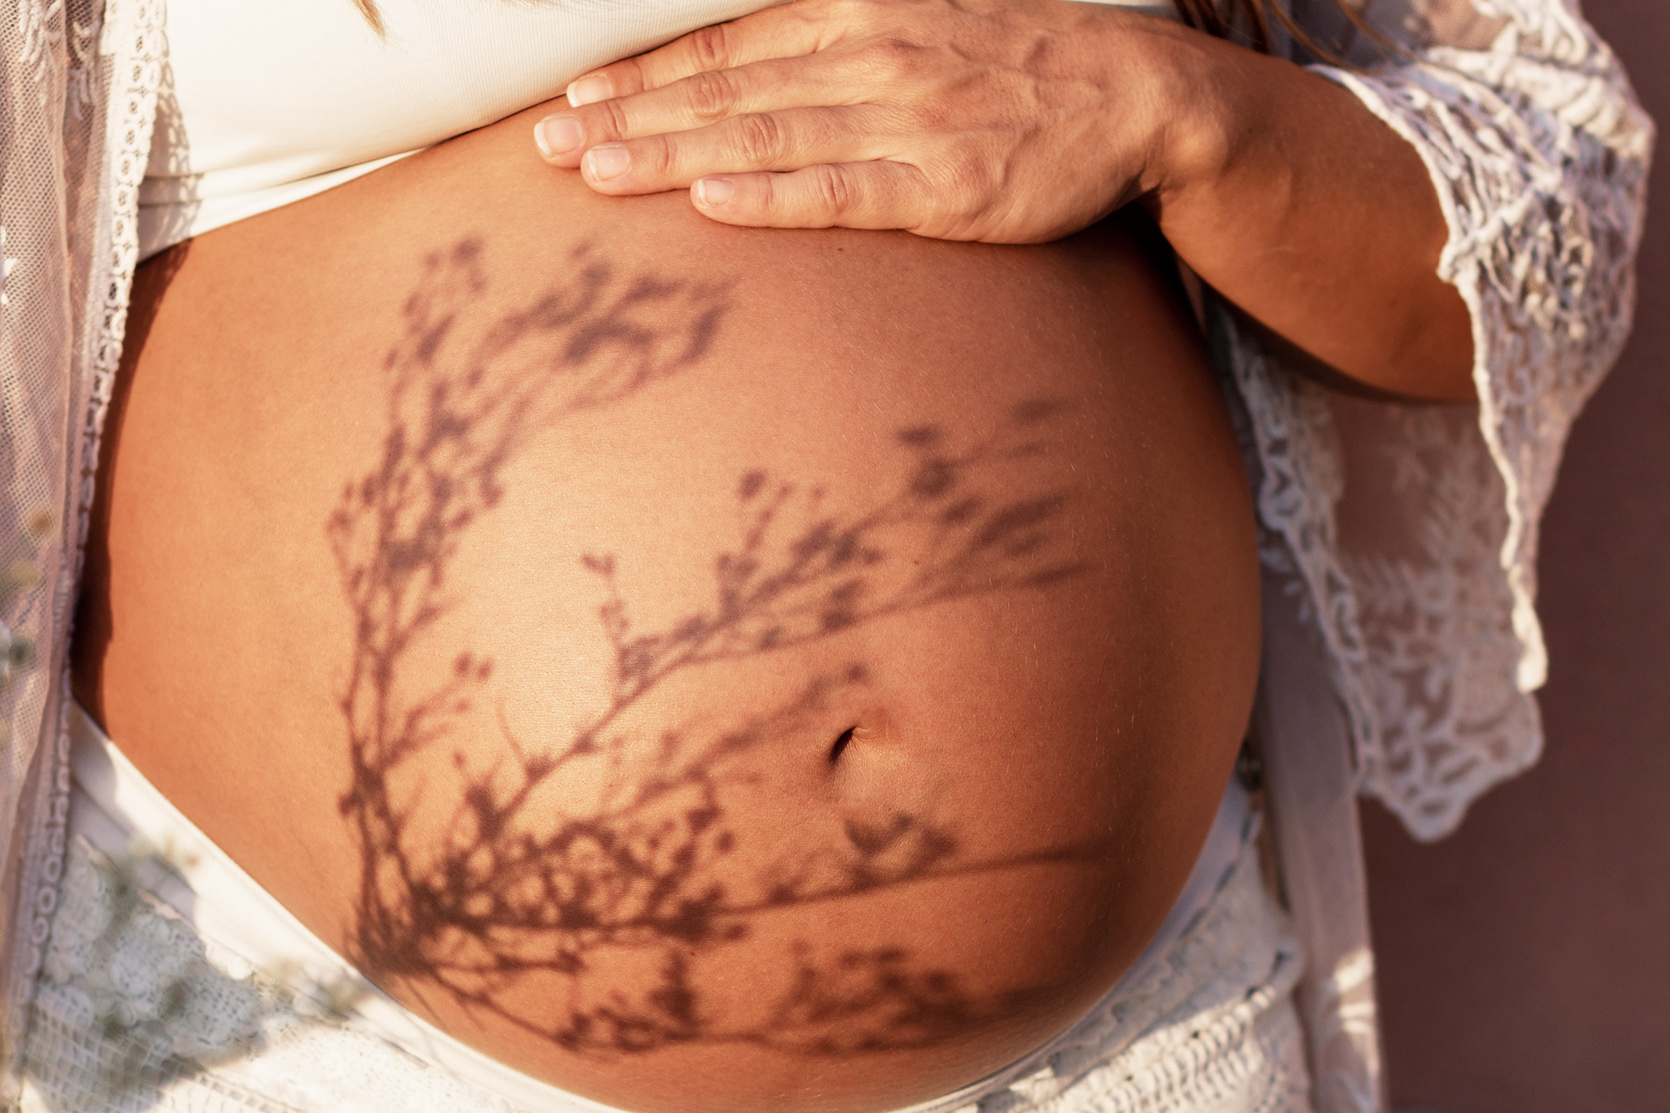 Linea negra, czyli linia na brzuchu w ciąży – co oznacza?